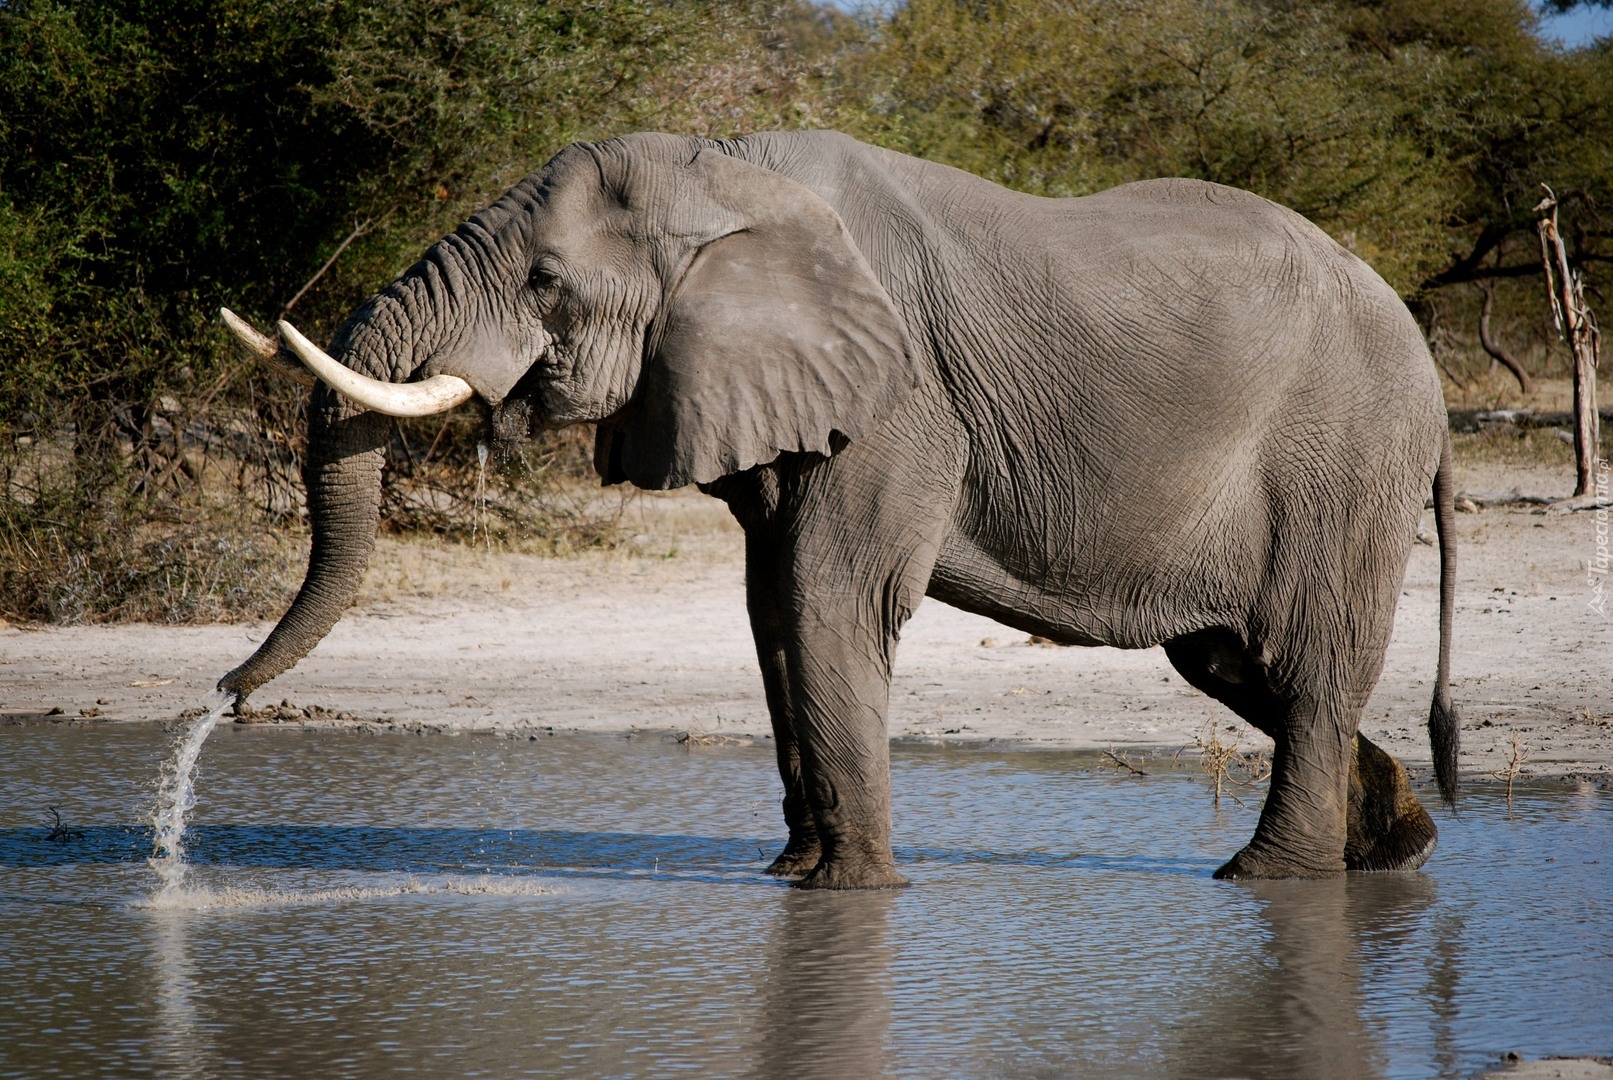 Внешний вид слонов. Слон. Слон пьет воду хоботом. Африканский слон. Хобот индийского слона.